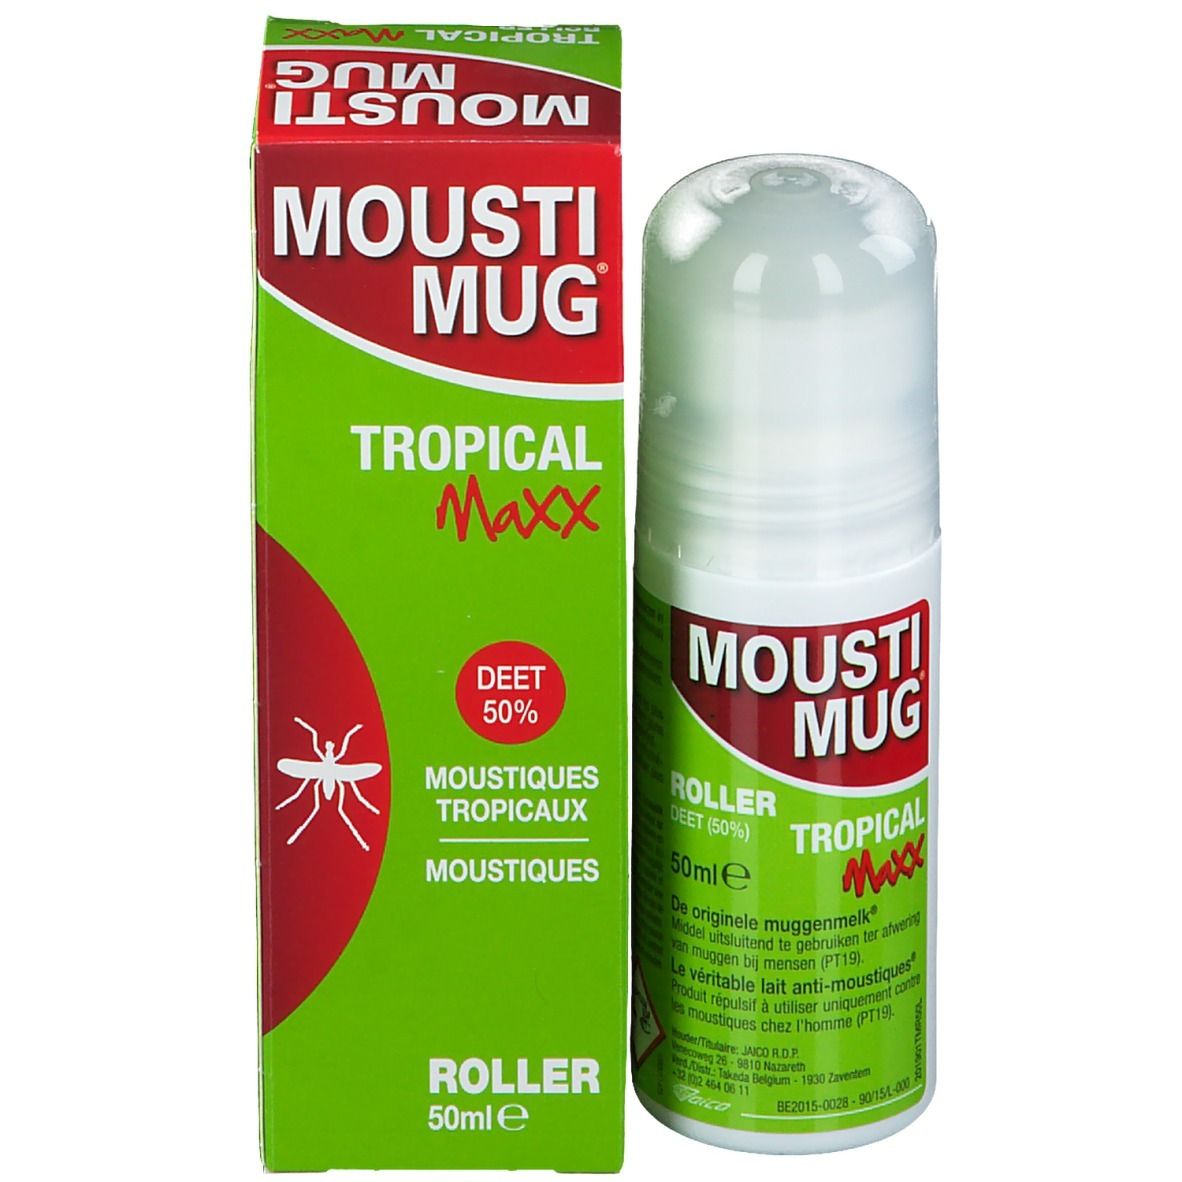 Moustimug Tropical Maxx Roller 50% DEET